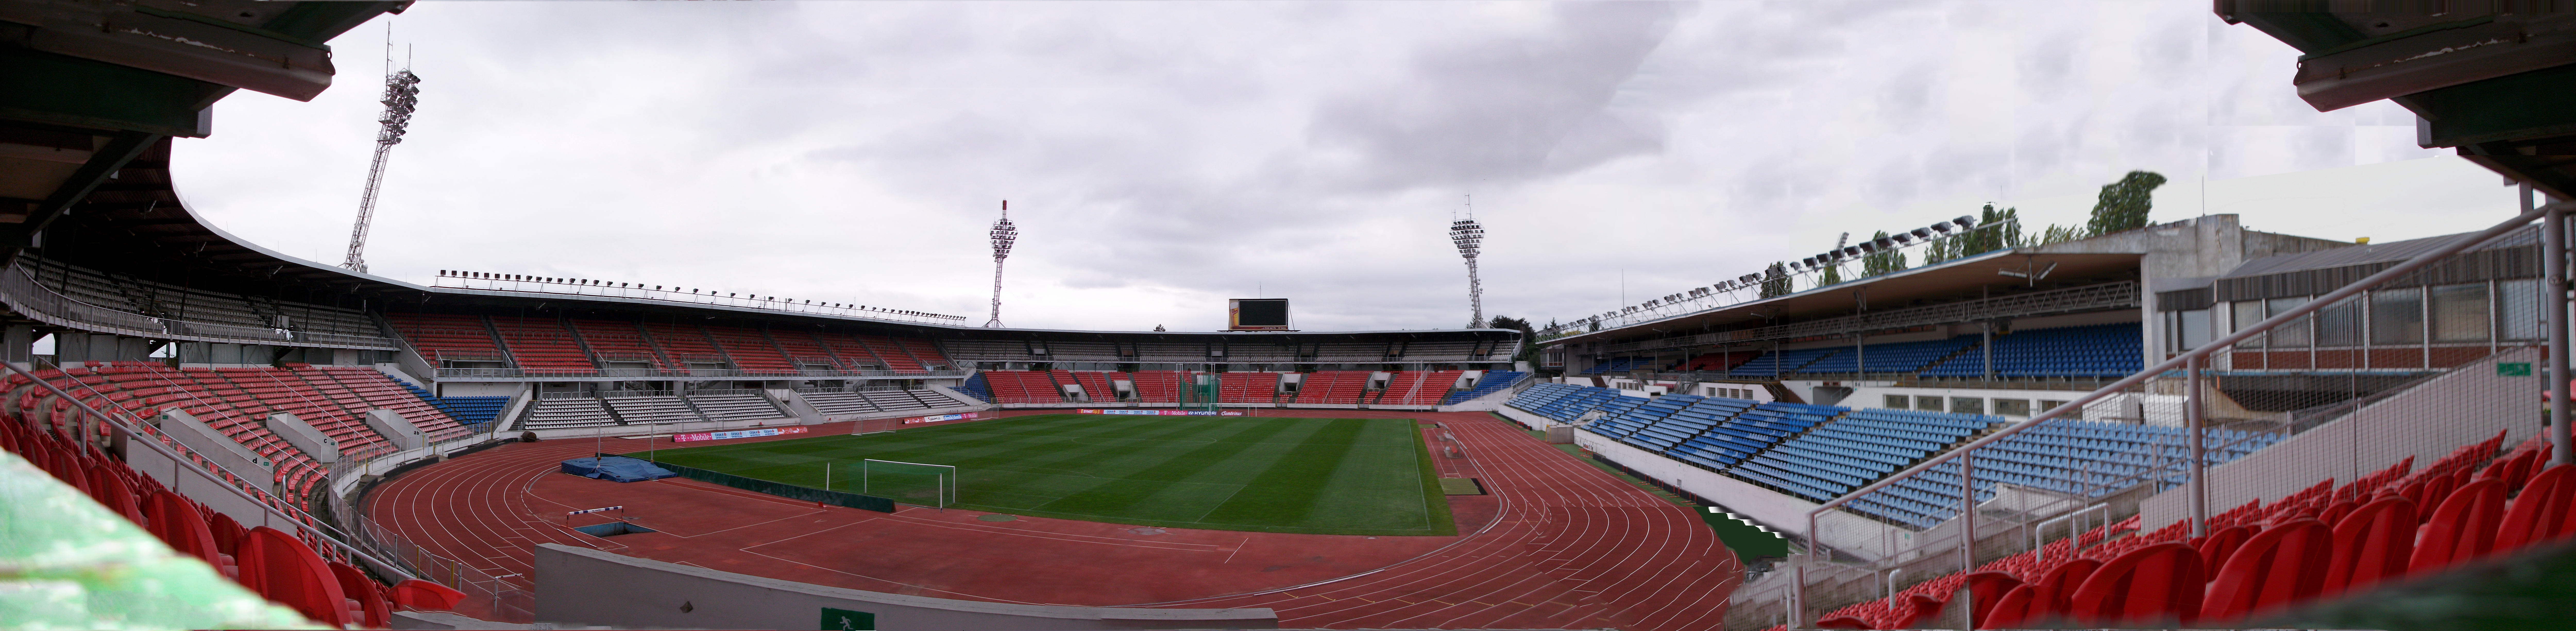 Evžena Rošického Stadium